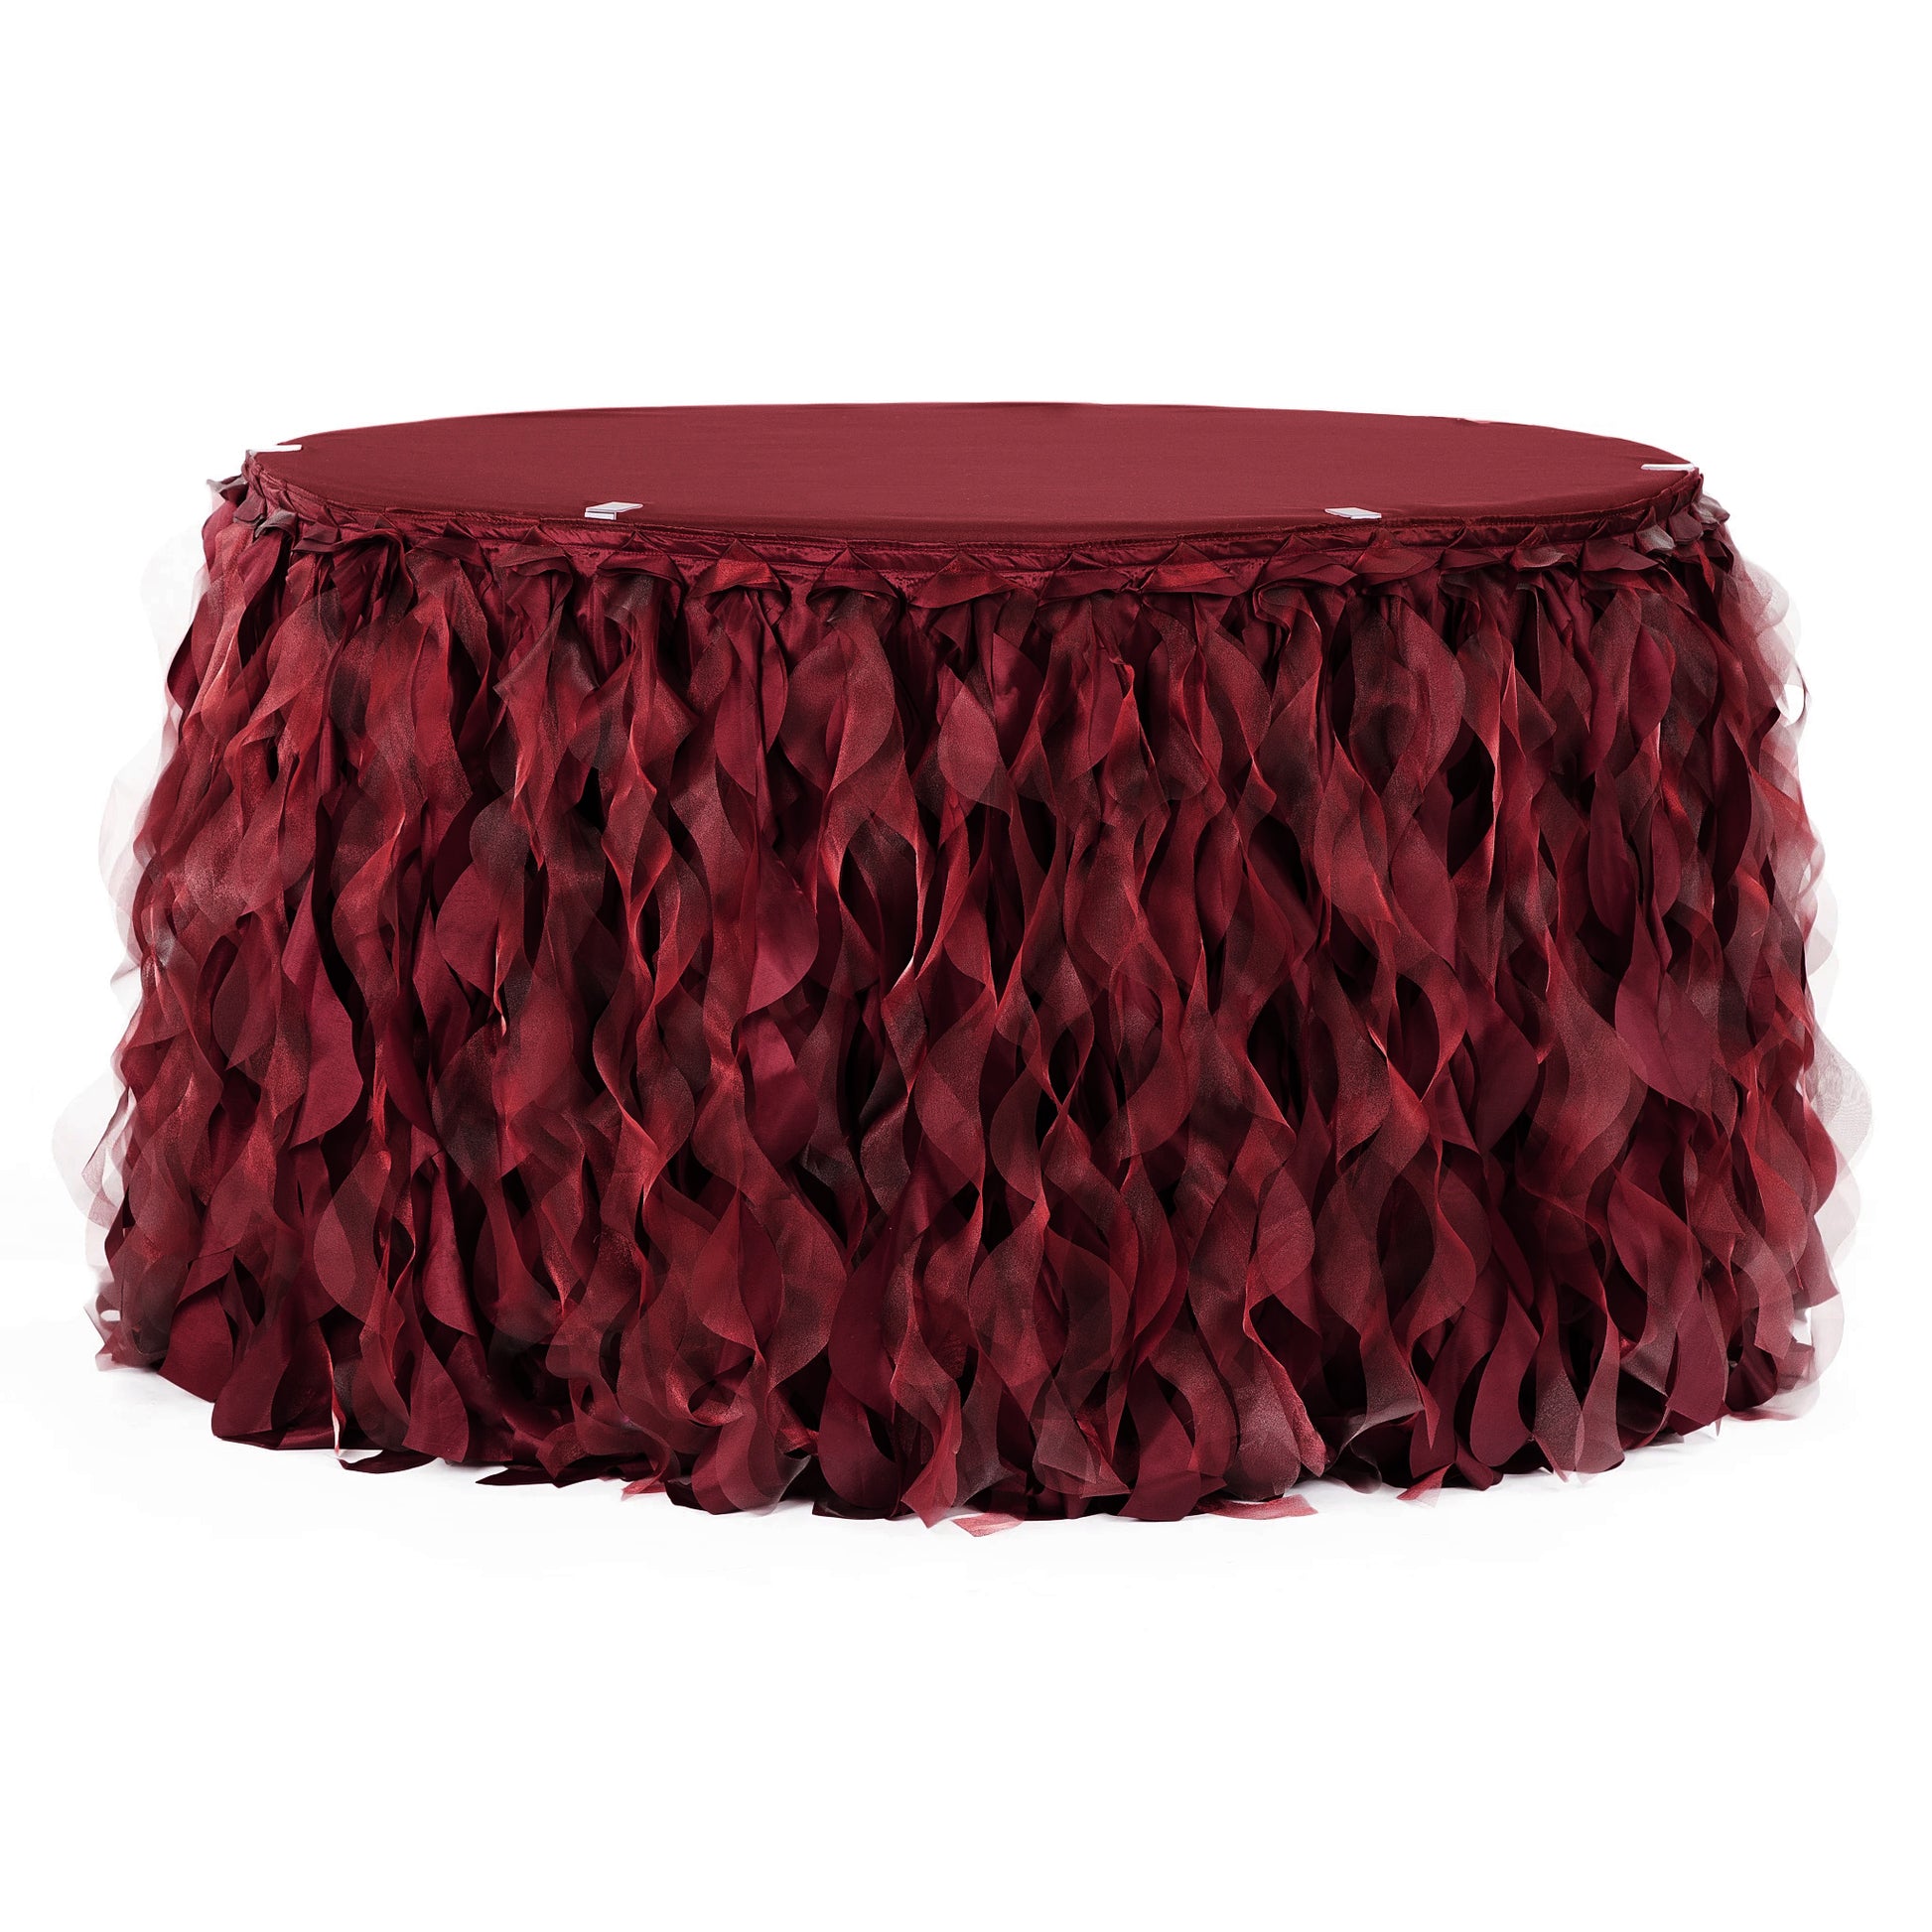 Curly Willow 17ft Table Skirt - Burgundy - CV Linens